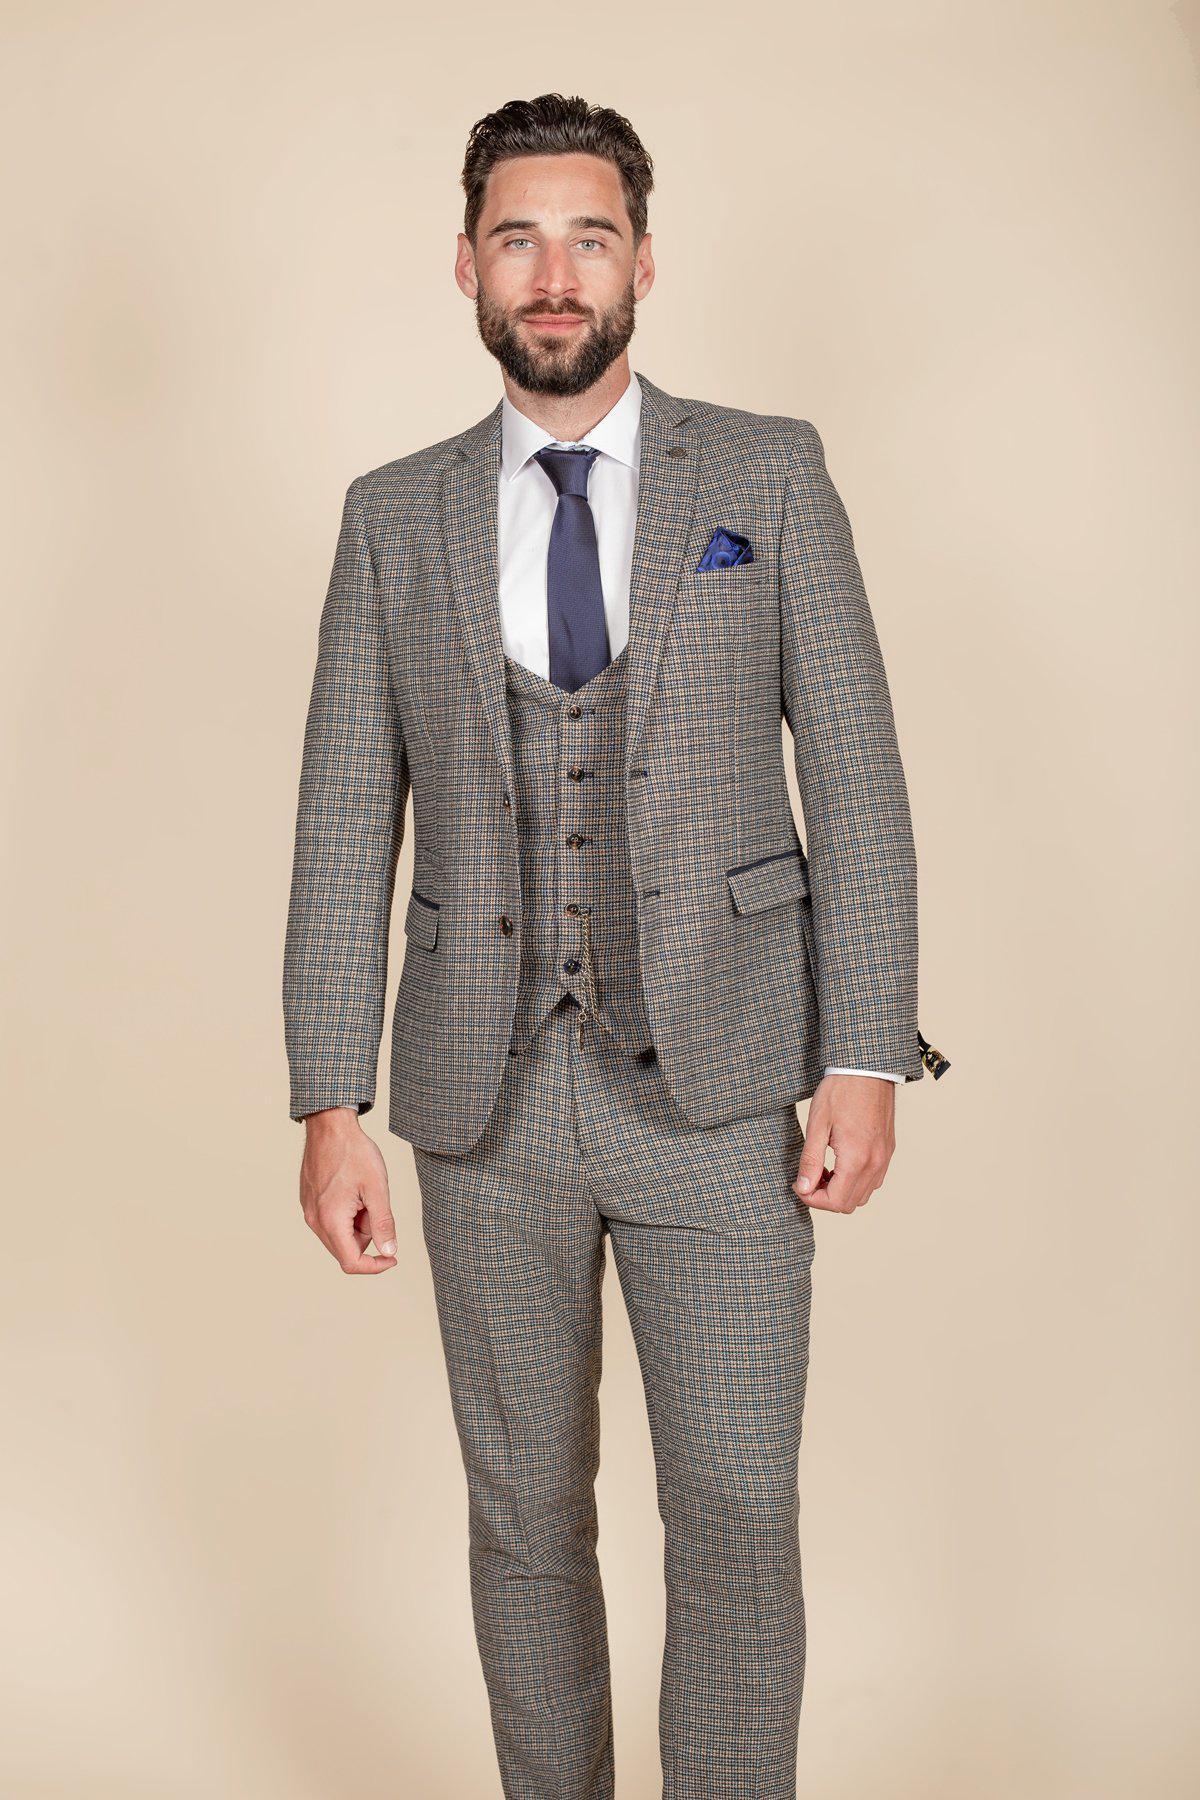 Grey Tweed Suit for Men Wedding Suit for Groom and Groomsmen 